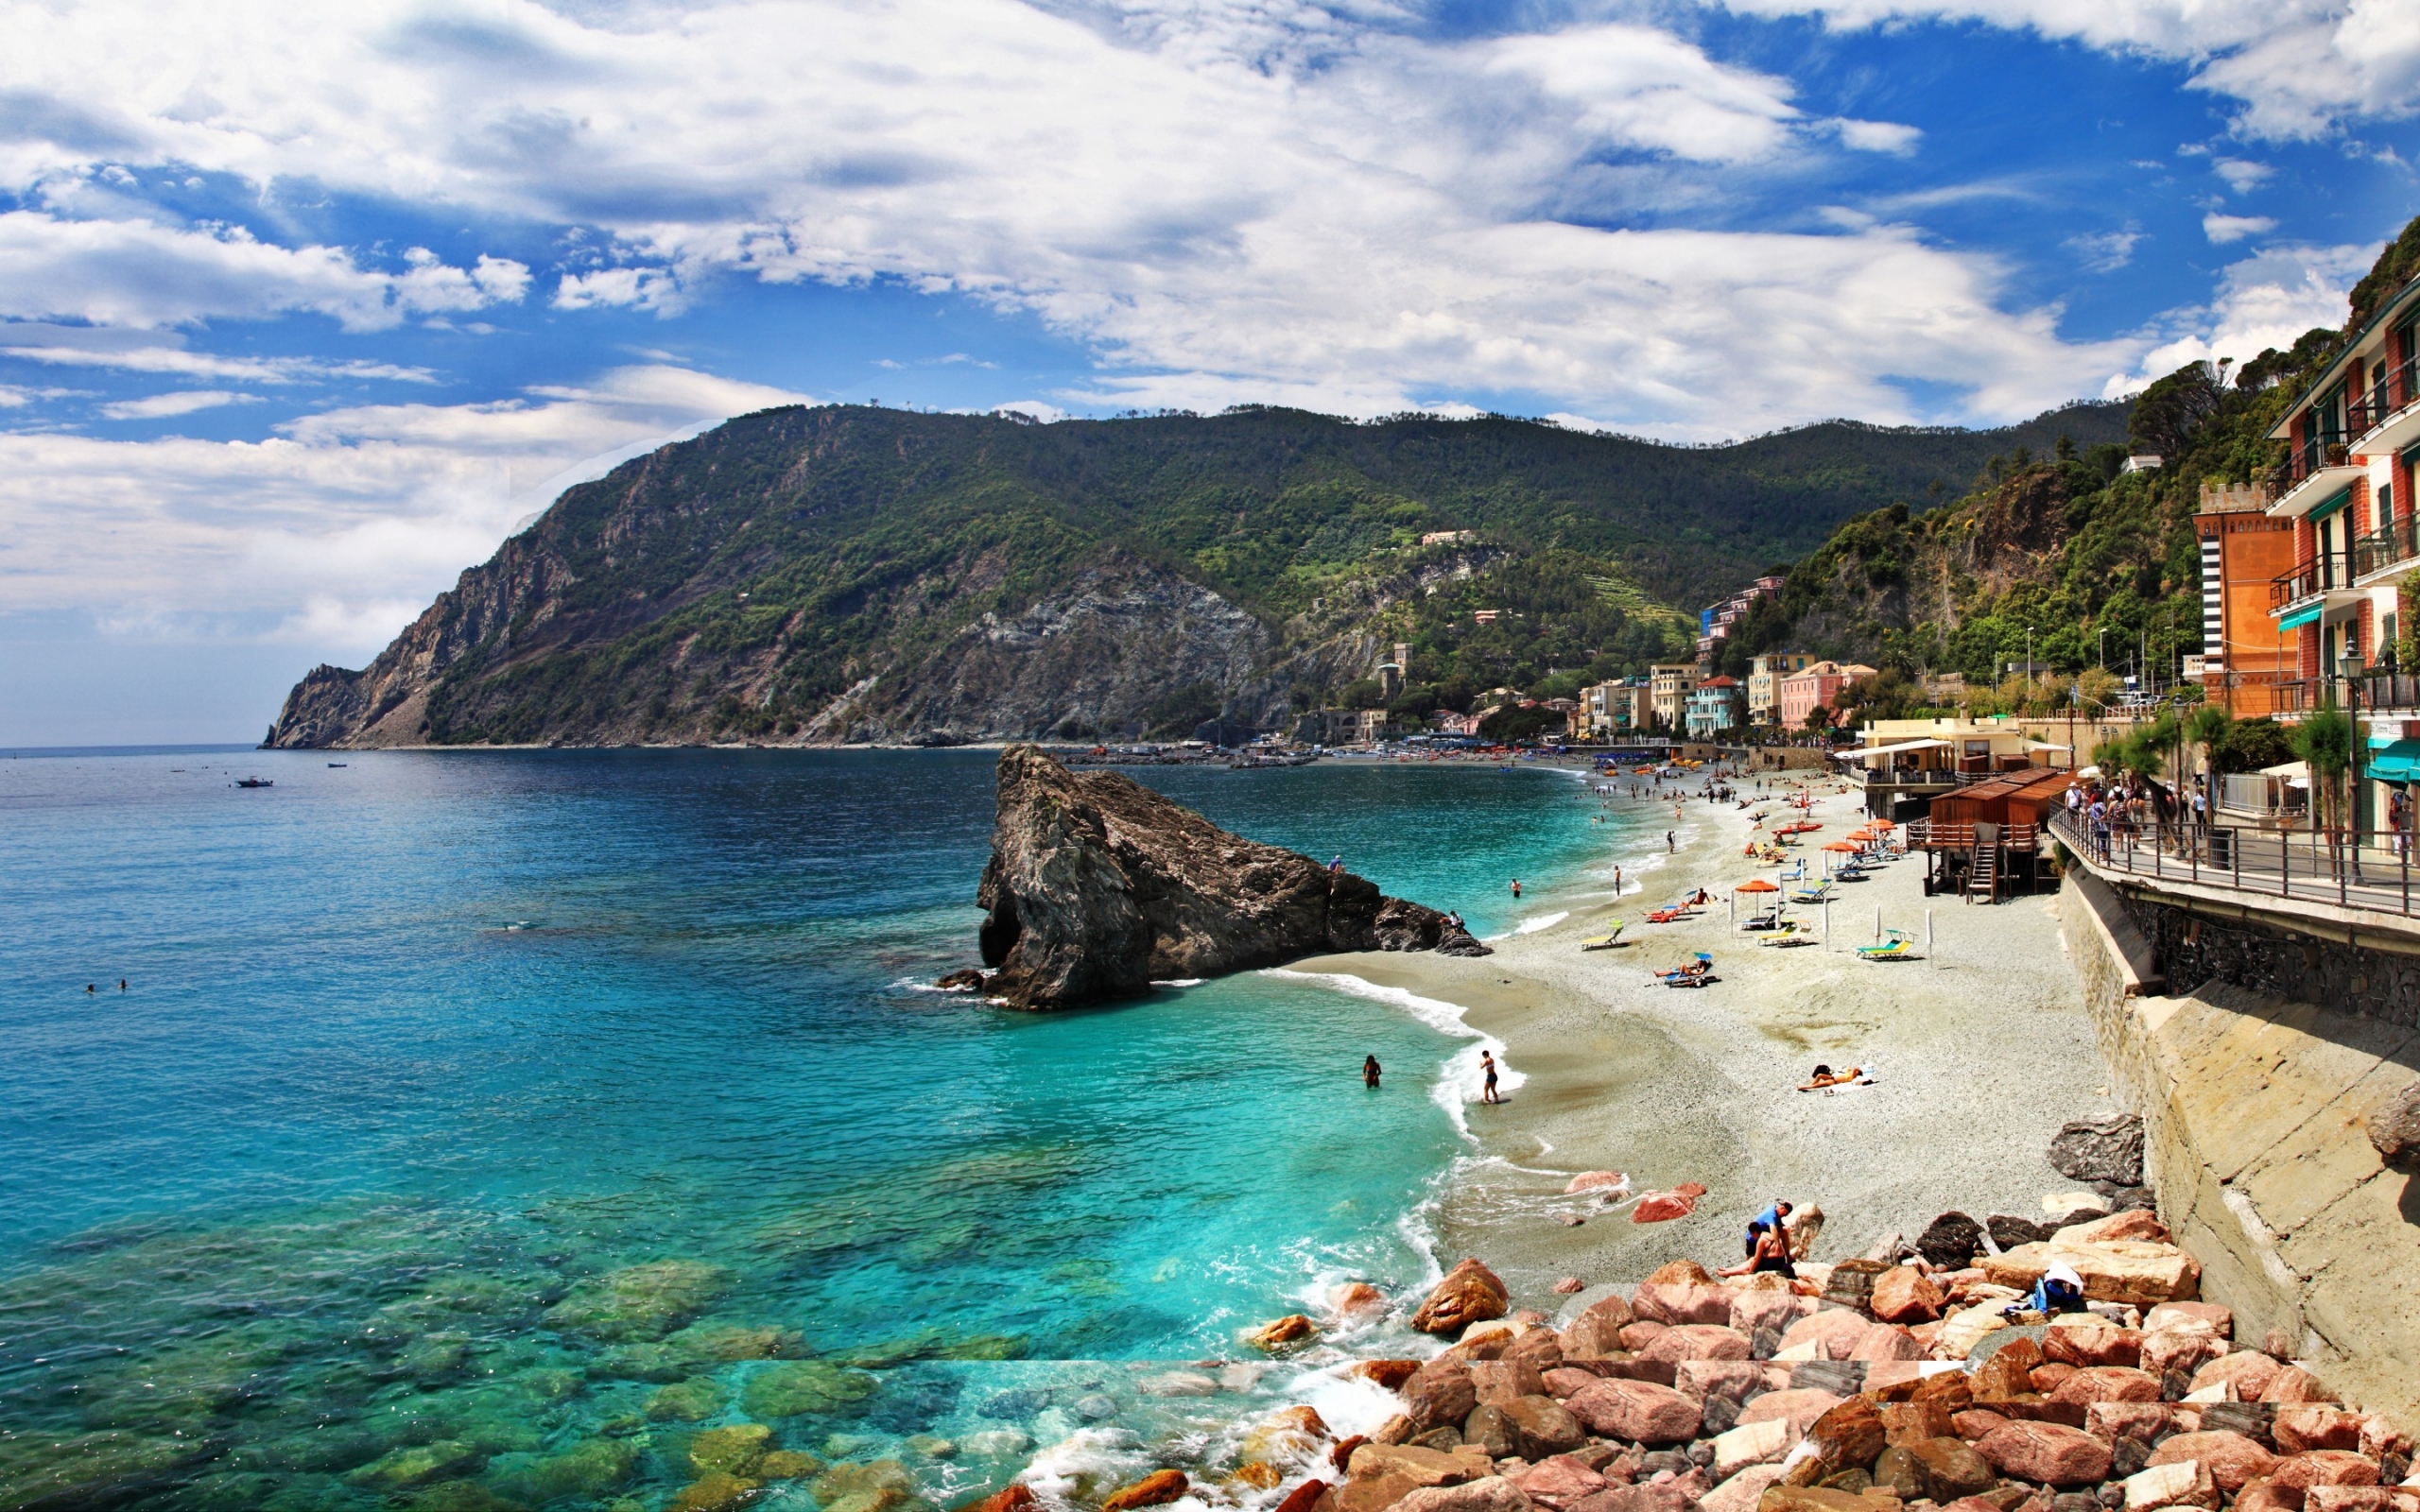 Monterosso al Mare Cinque Terre for 2560 x 1600 widescreen resolution